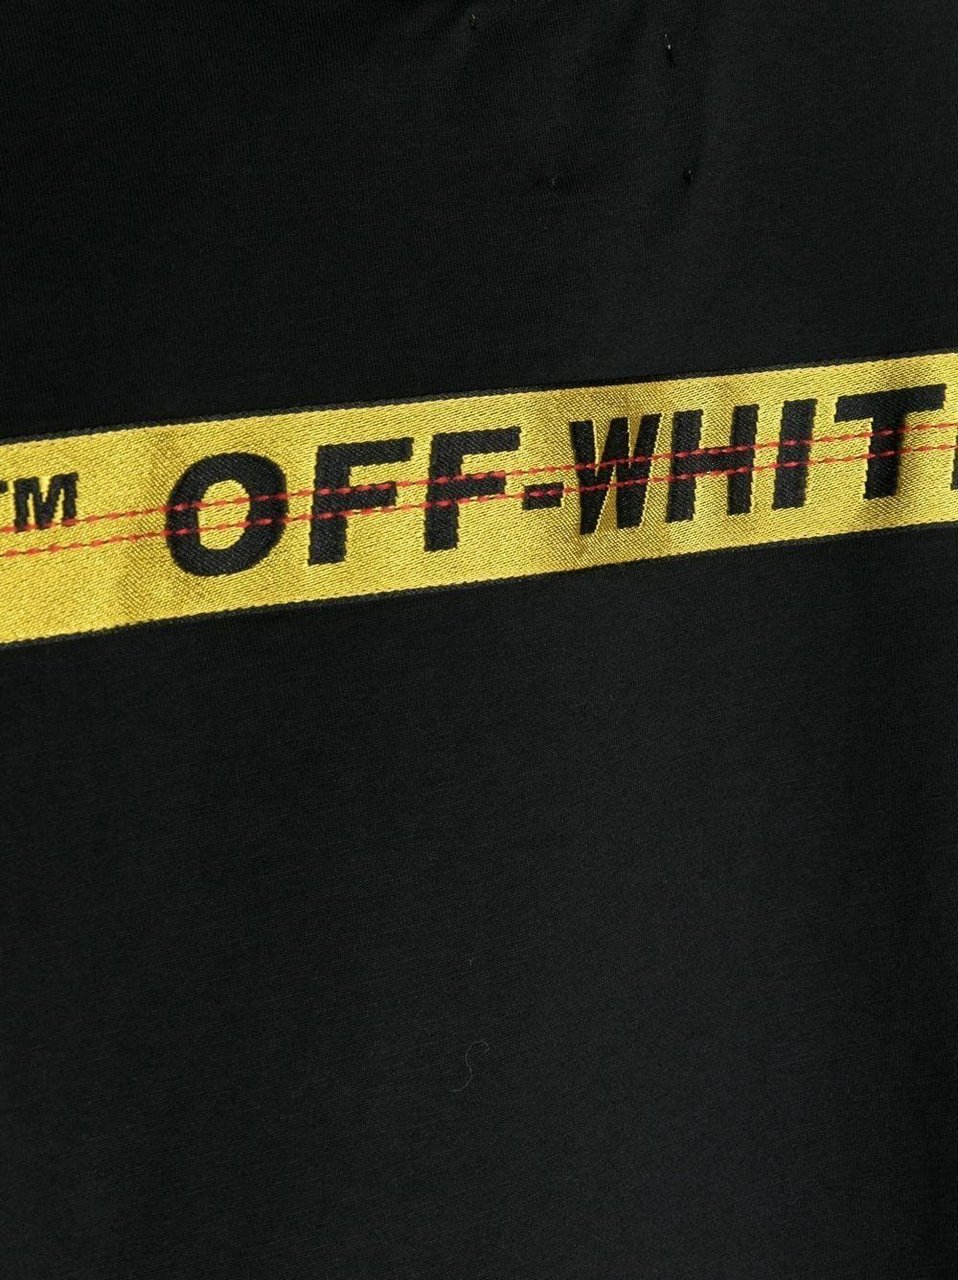 OFF-WHITE Off-White OBAA005C99JER001 kinder t-shirt zwart/geel Zwart